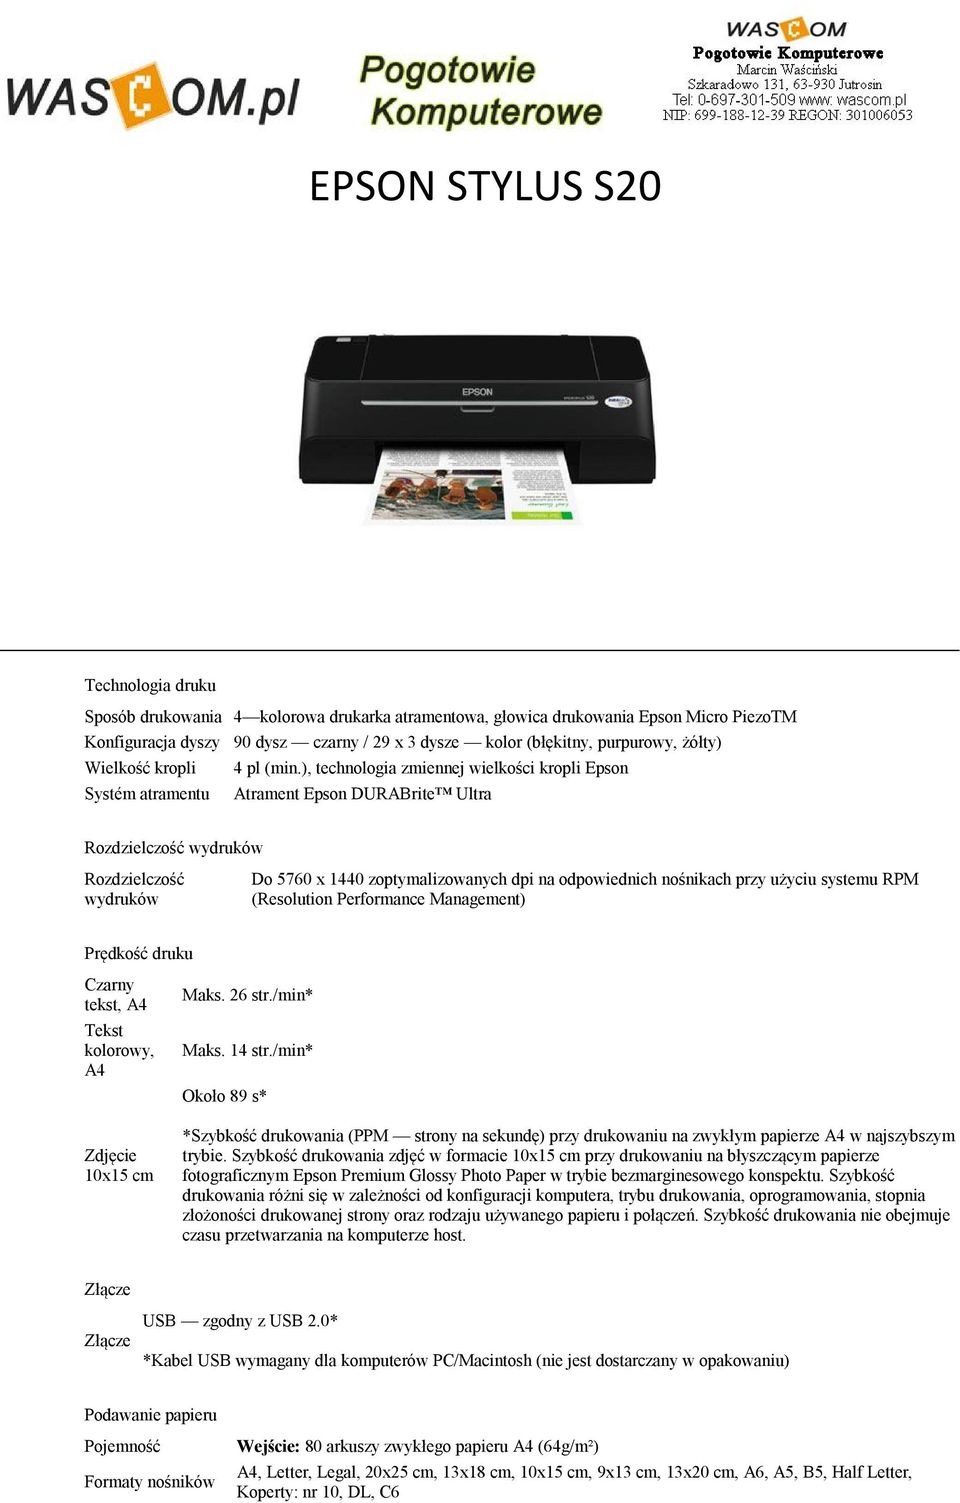 ), technologia zmiennej wielkości kropli Epson Atrament Epson DURABrite Ultra Rozdzielczość wydruków Rozdzielczość wydruków Do 5760 x 1440 zoptymalizowanych dpi na odpowiednich nośnikach przy użyciu